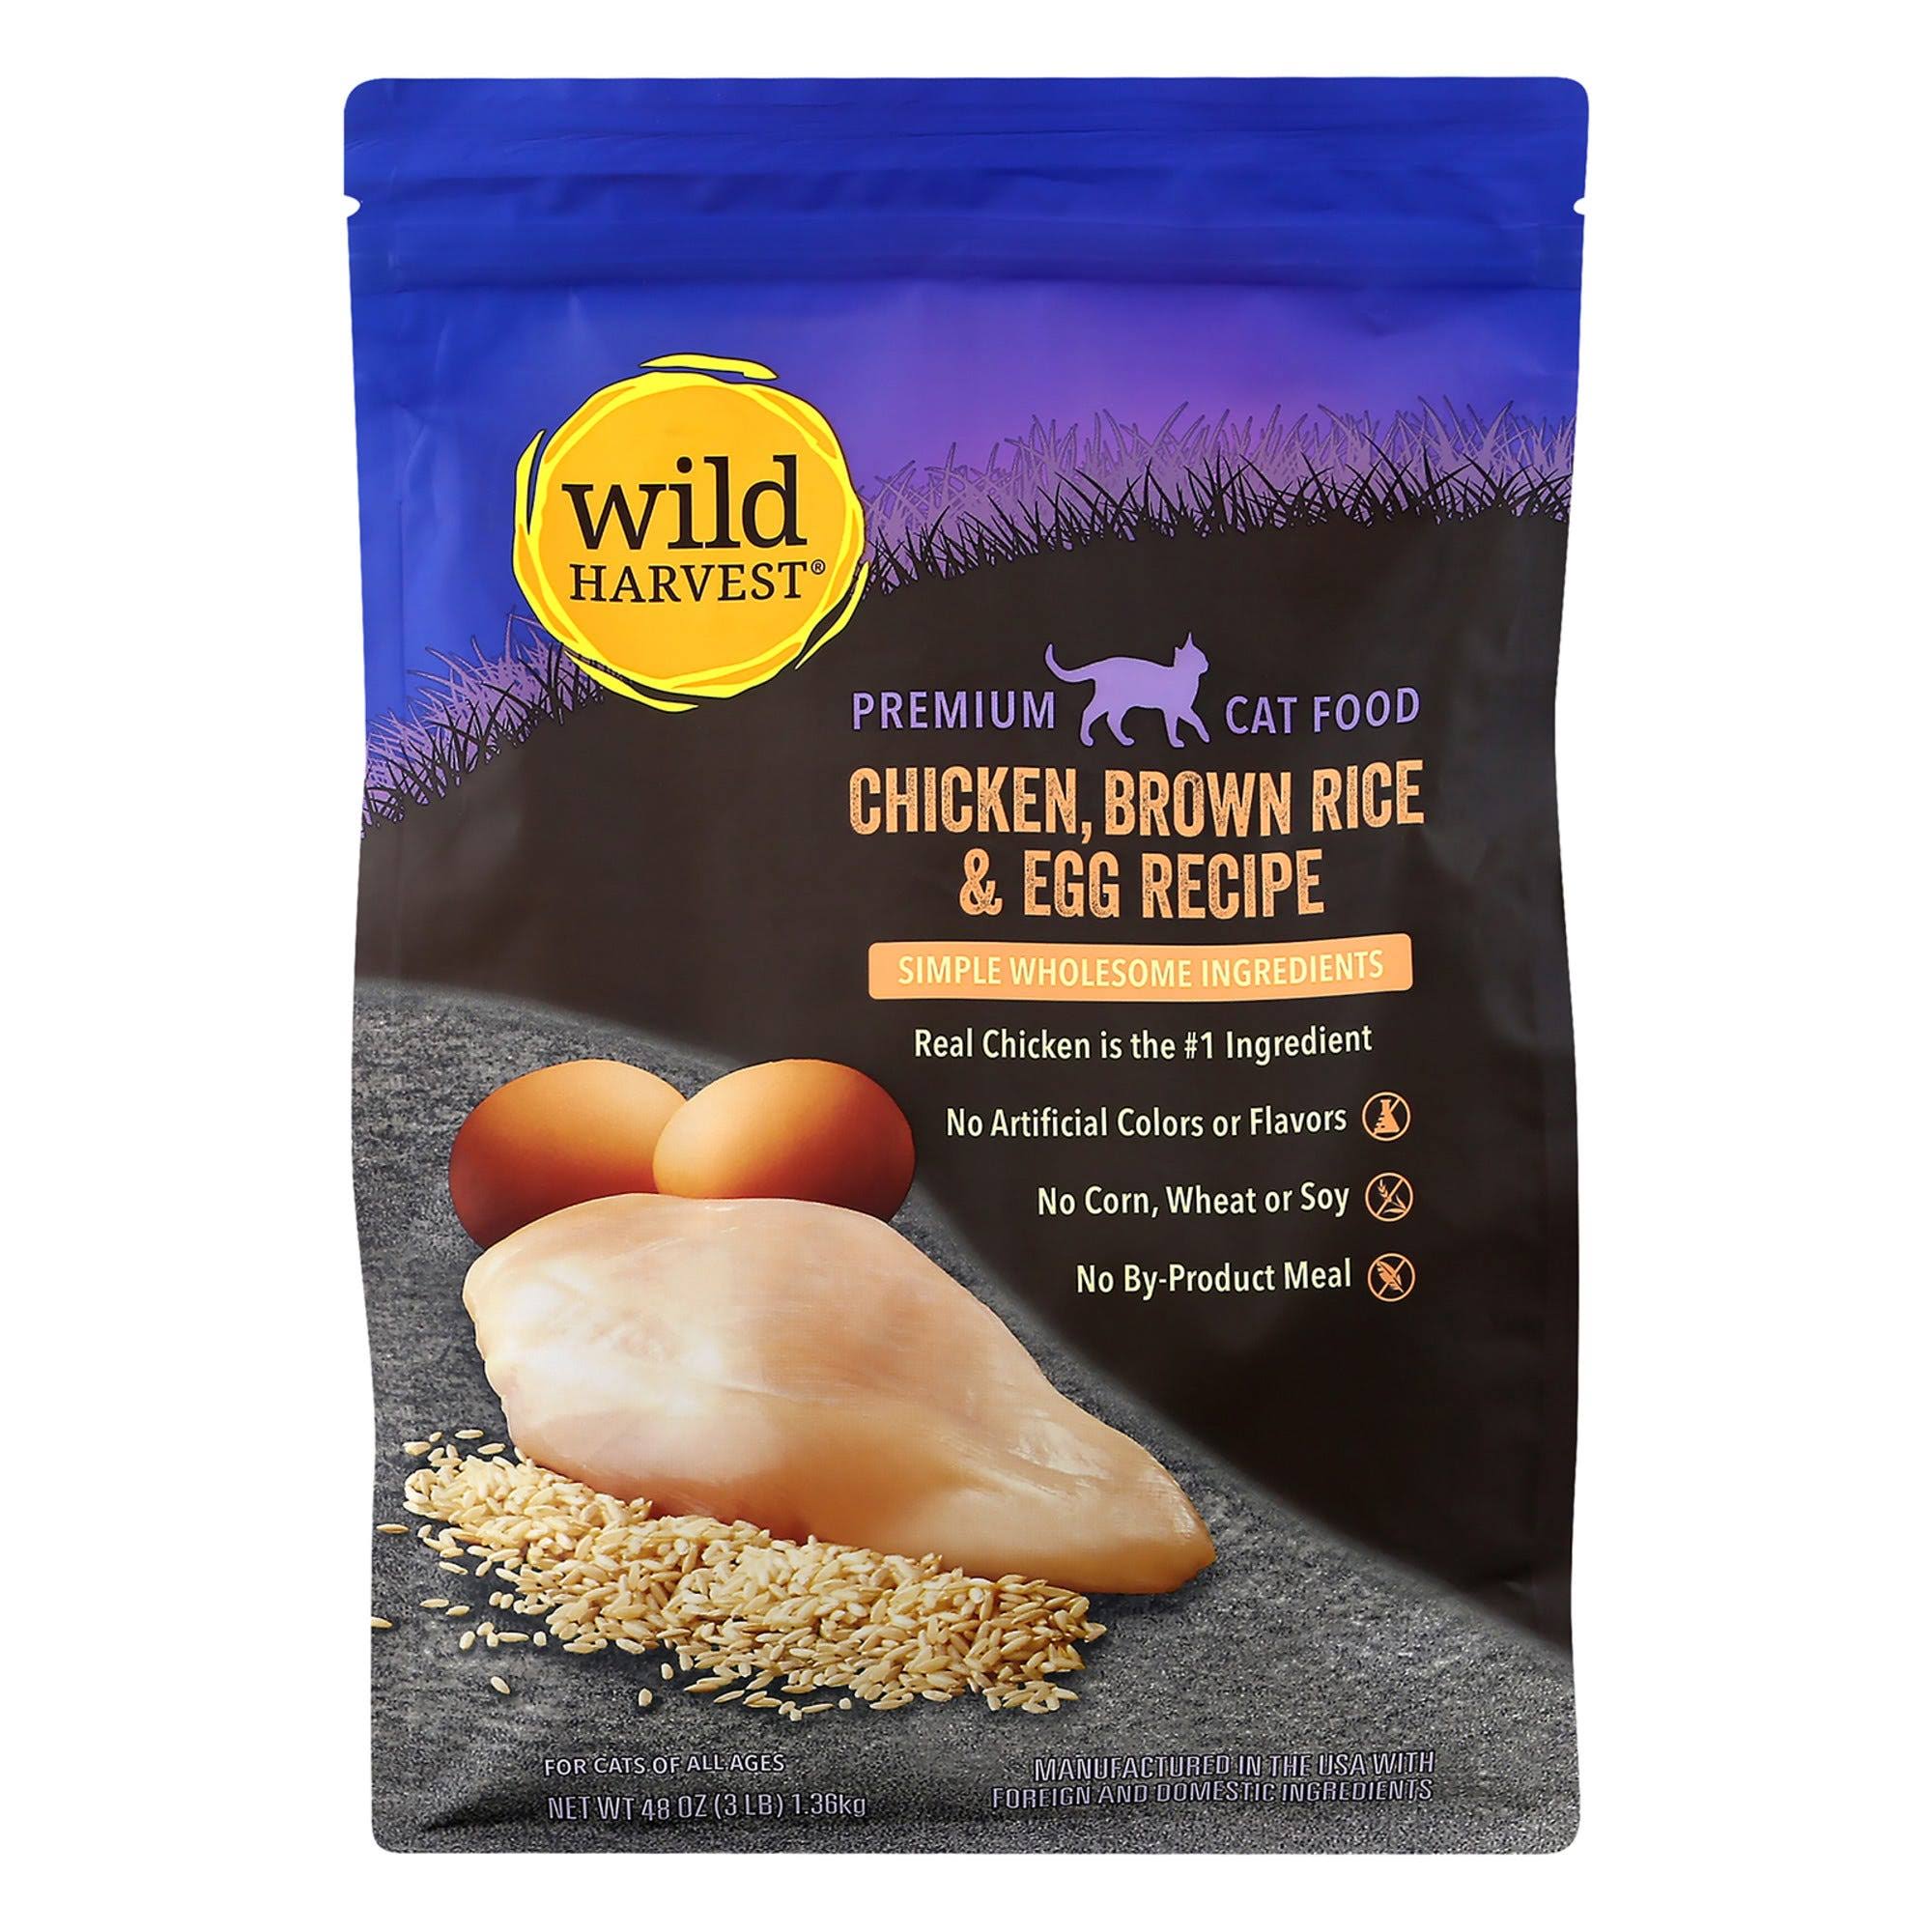 Wild Harvest Chicken, Brown Rice & Egg Recipe Premium Cat Food - 3 lb